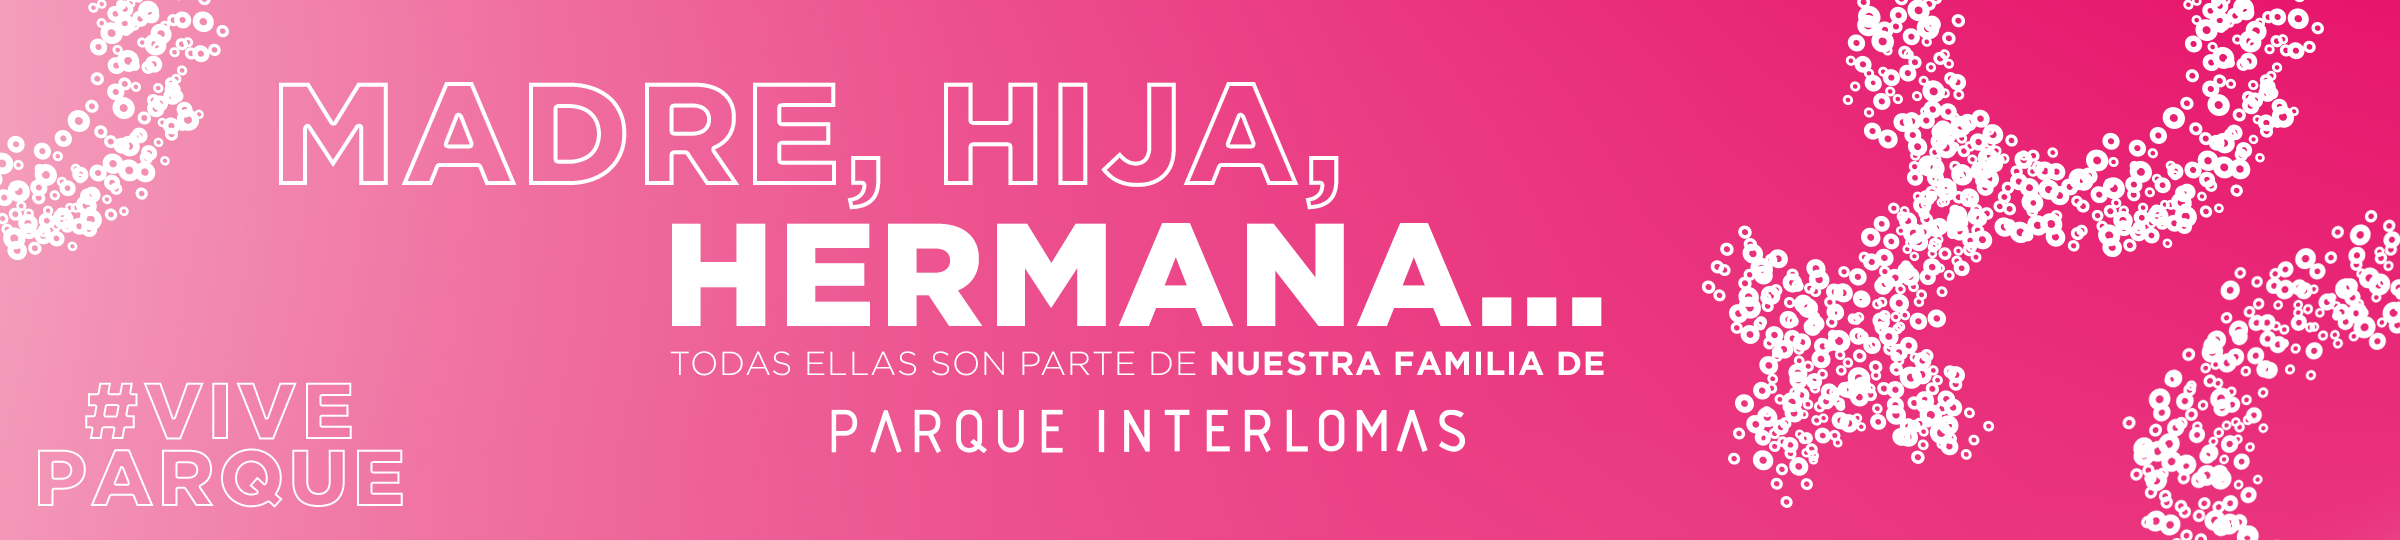 Banner Web Home Parque Interlomas Día de la Mujer